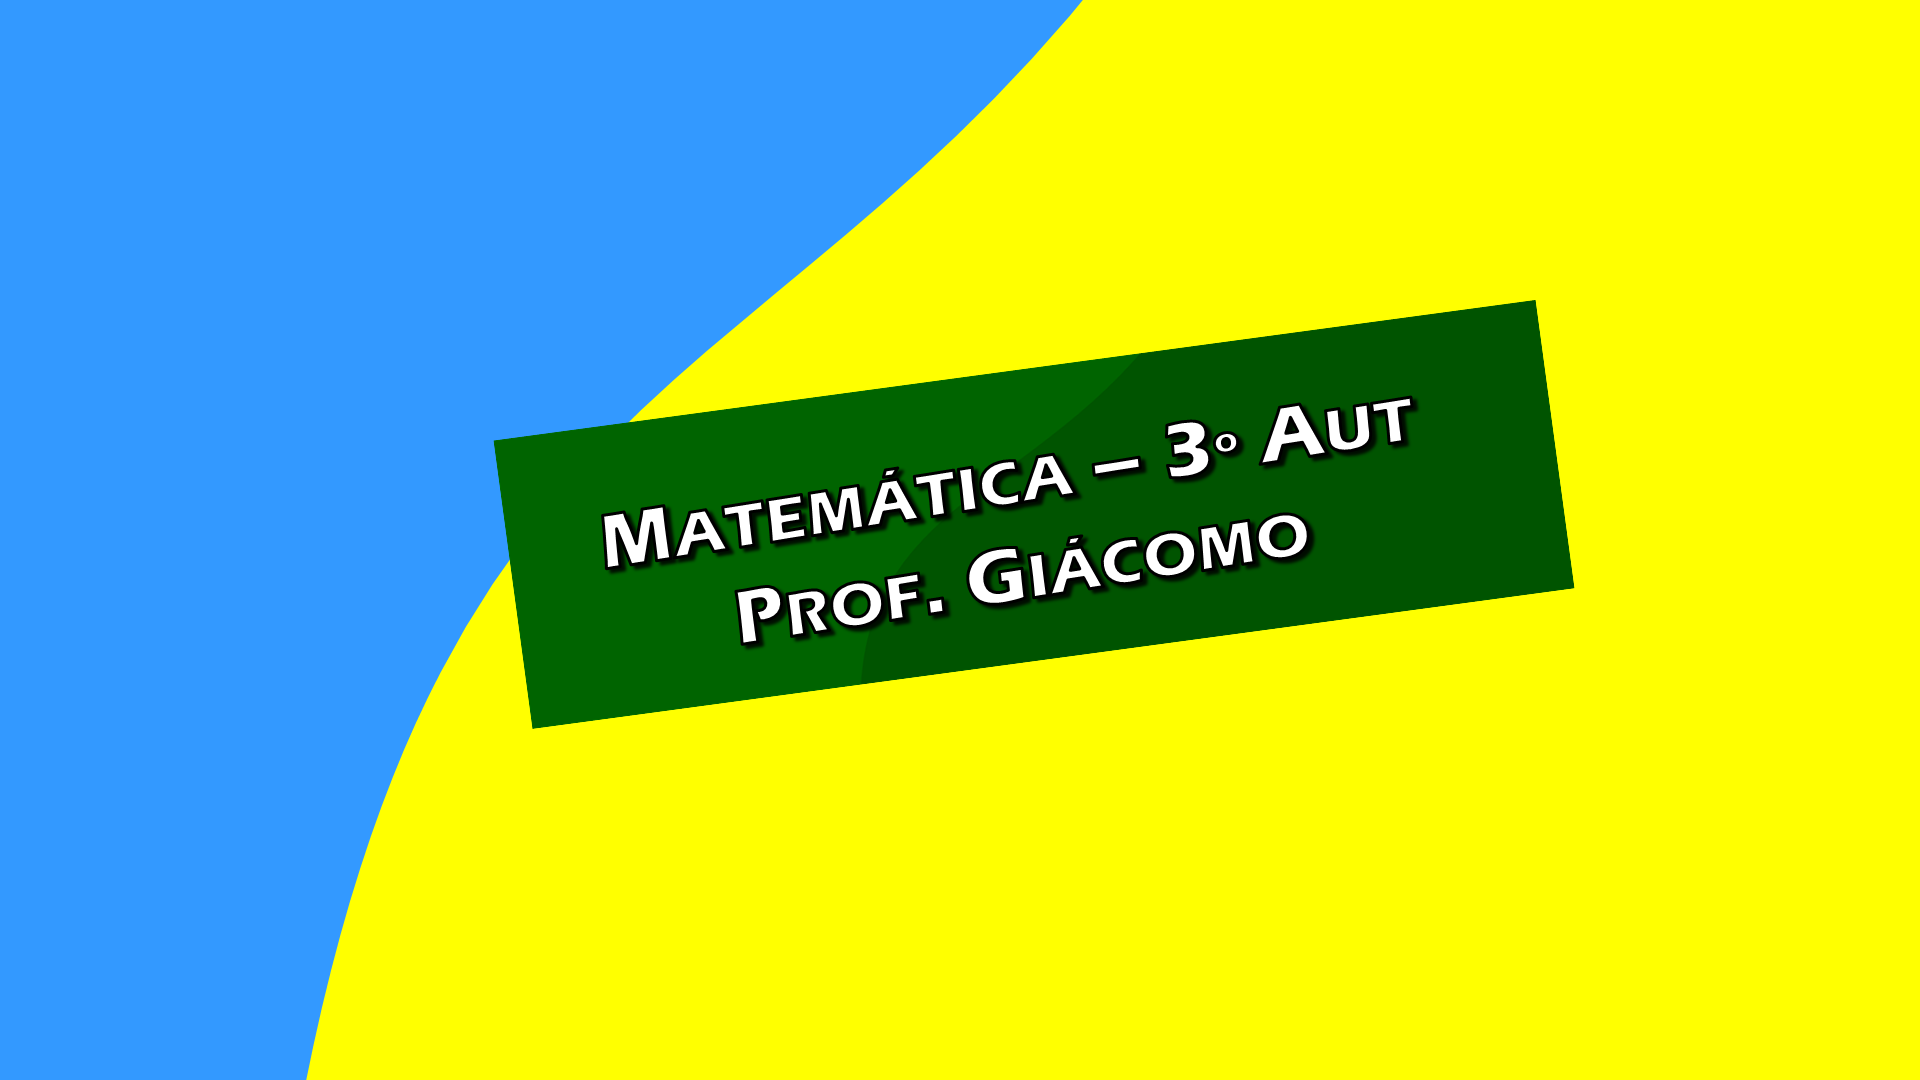 Matemática - 3o AUTOMAÇÃO - 2021 - Prof. Giácomo 